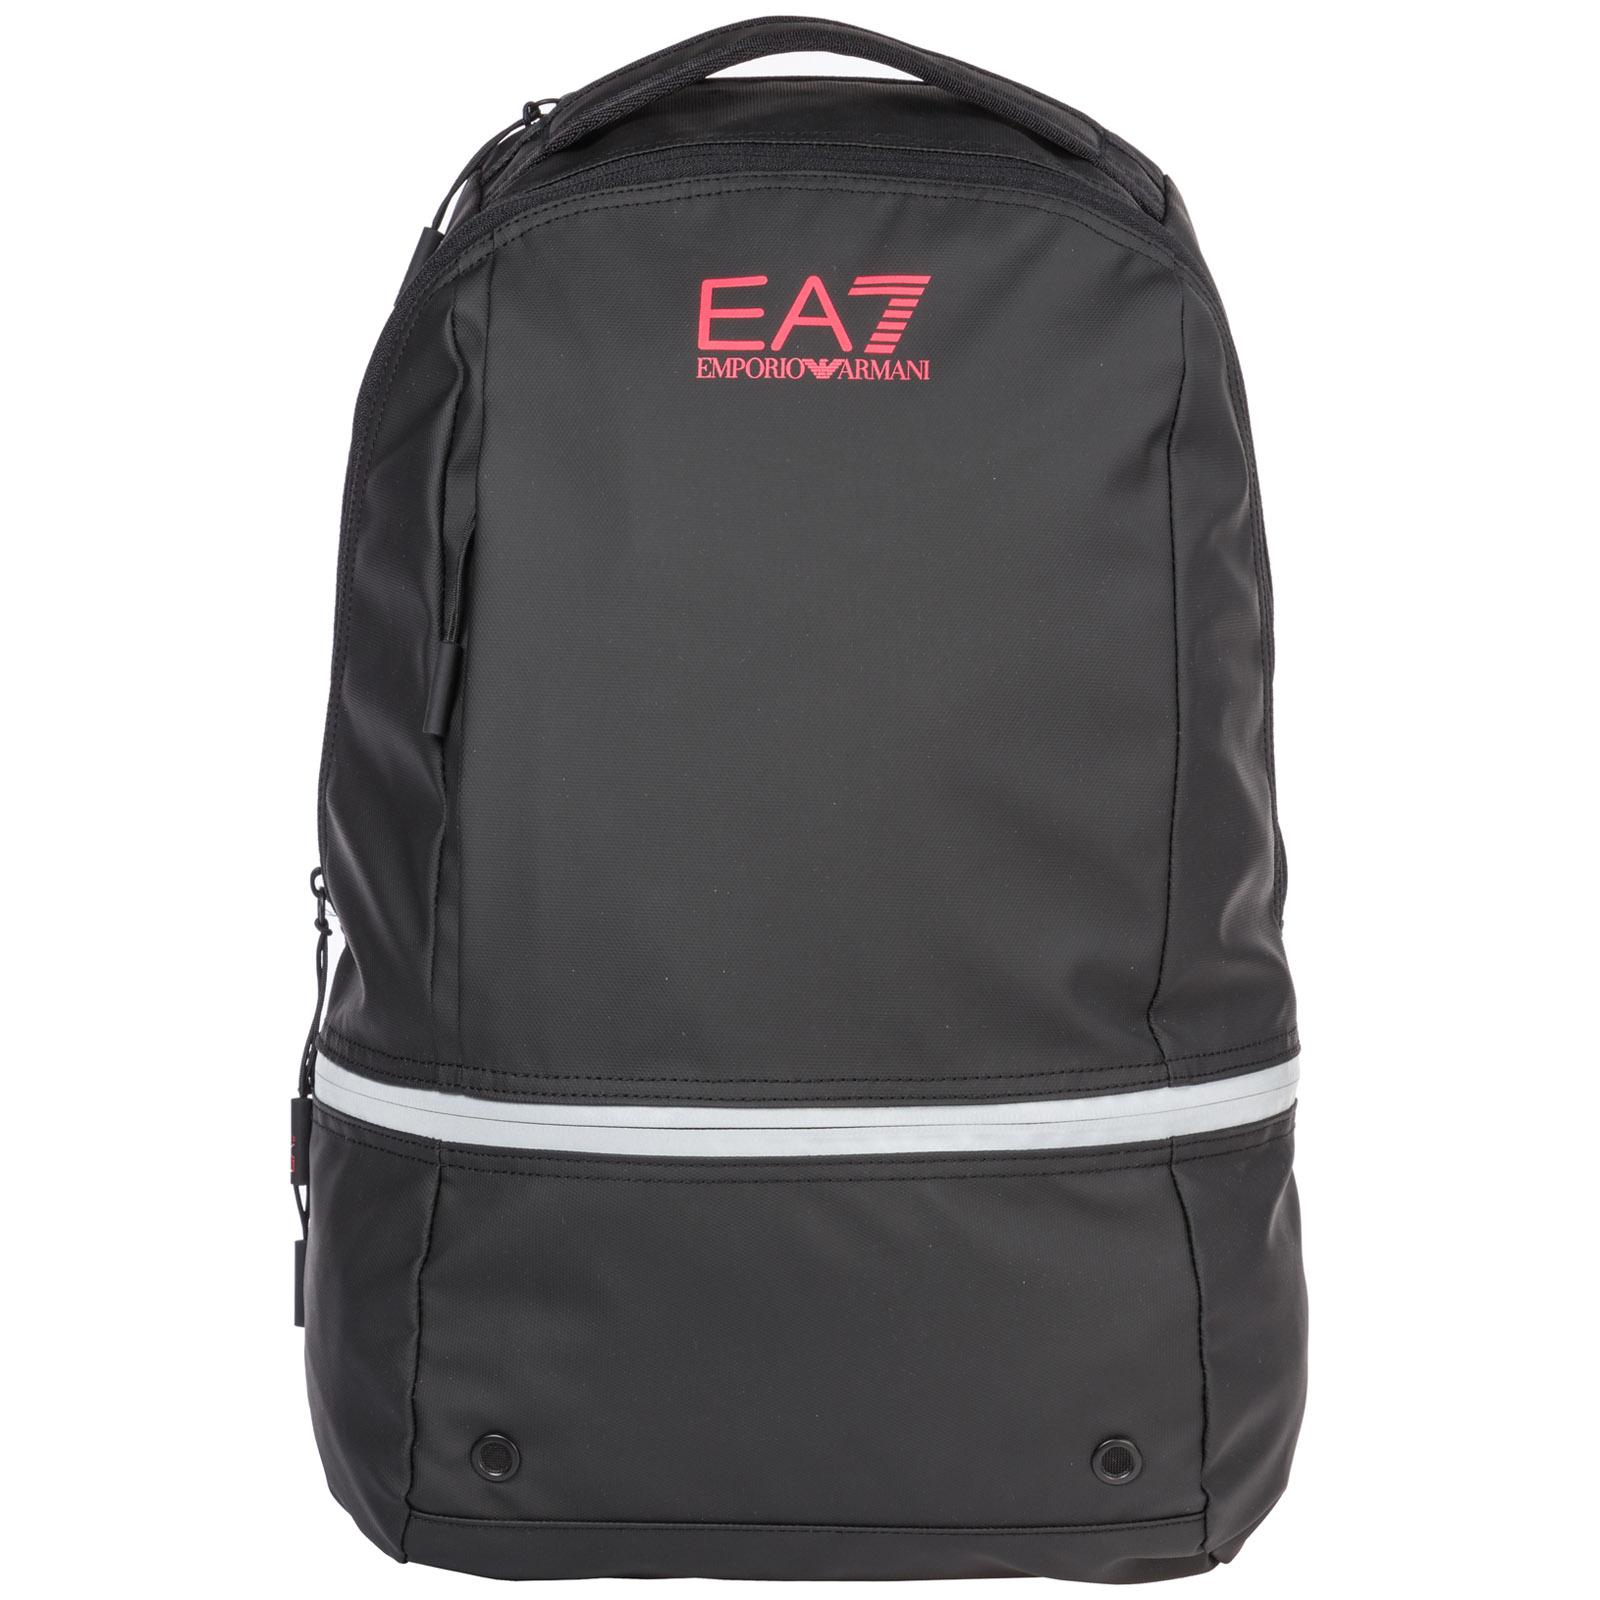 EA7 Rucksack Backpack Travel in Black for Men - Lyst